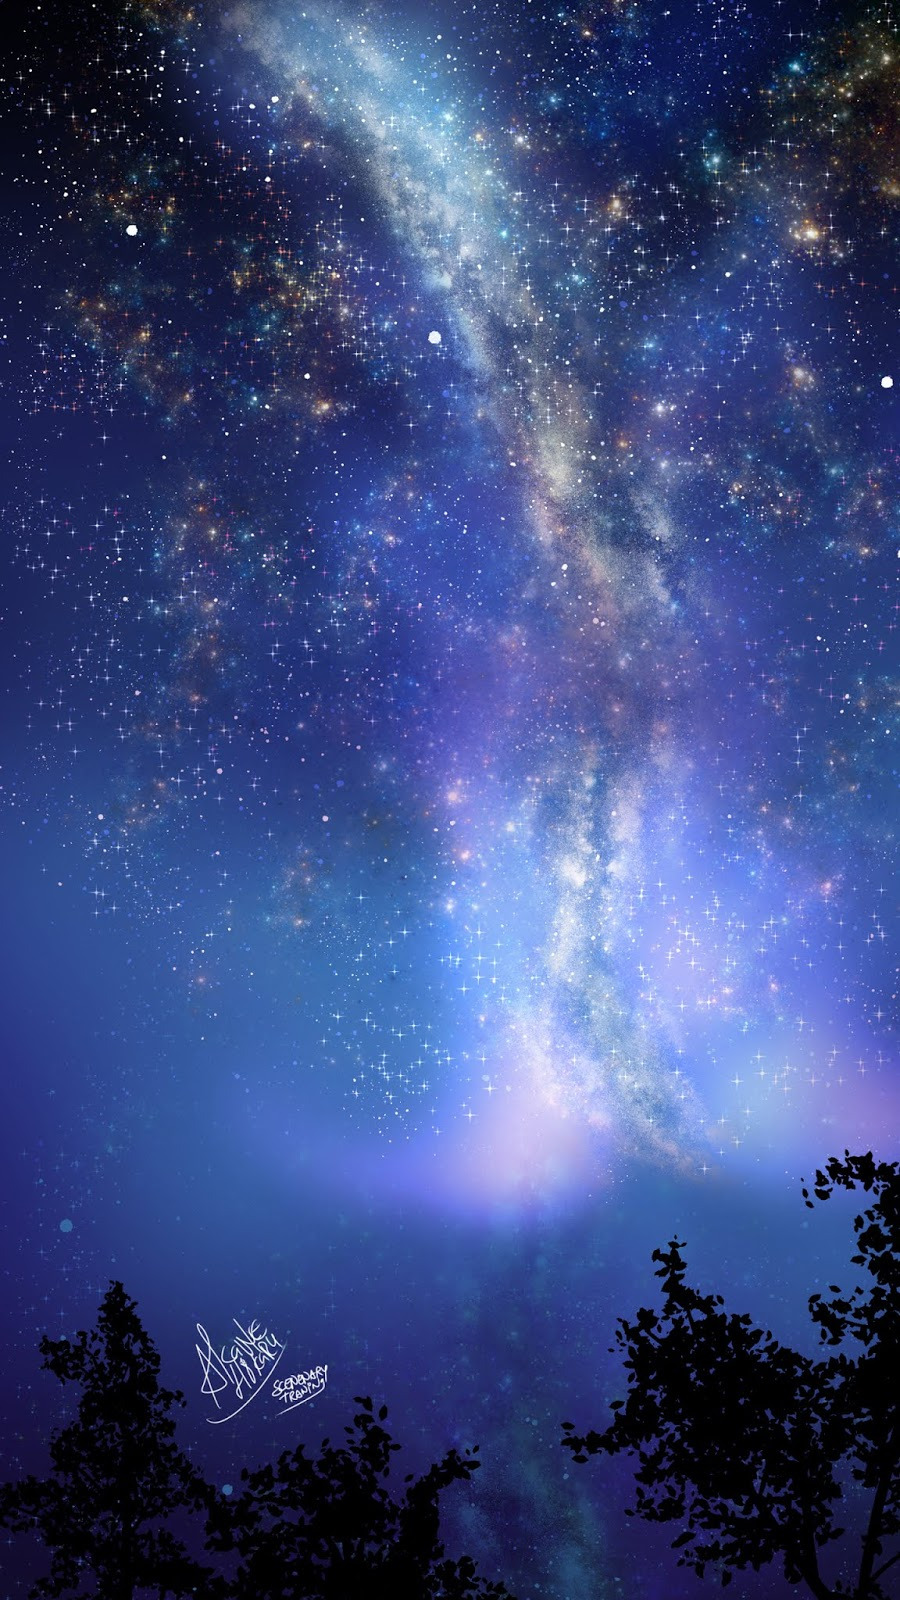 Tìm hiểu hơn 96 ảnh anime bầu trời sao mới nhất - Tin Học Vui